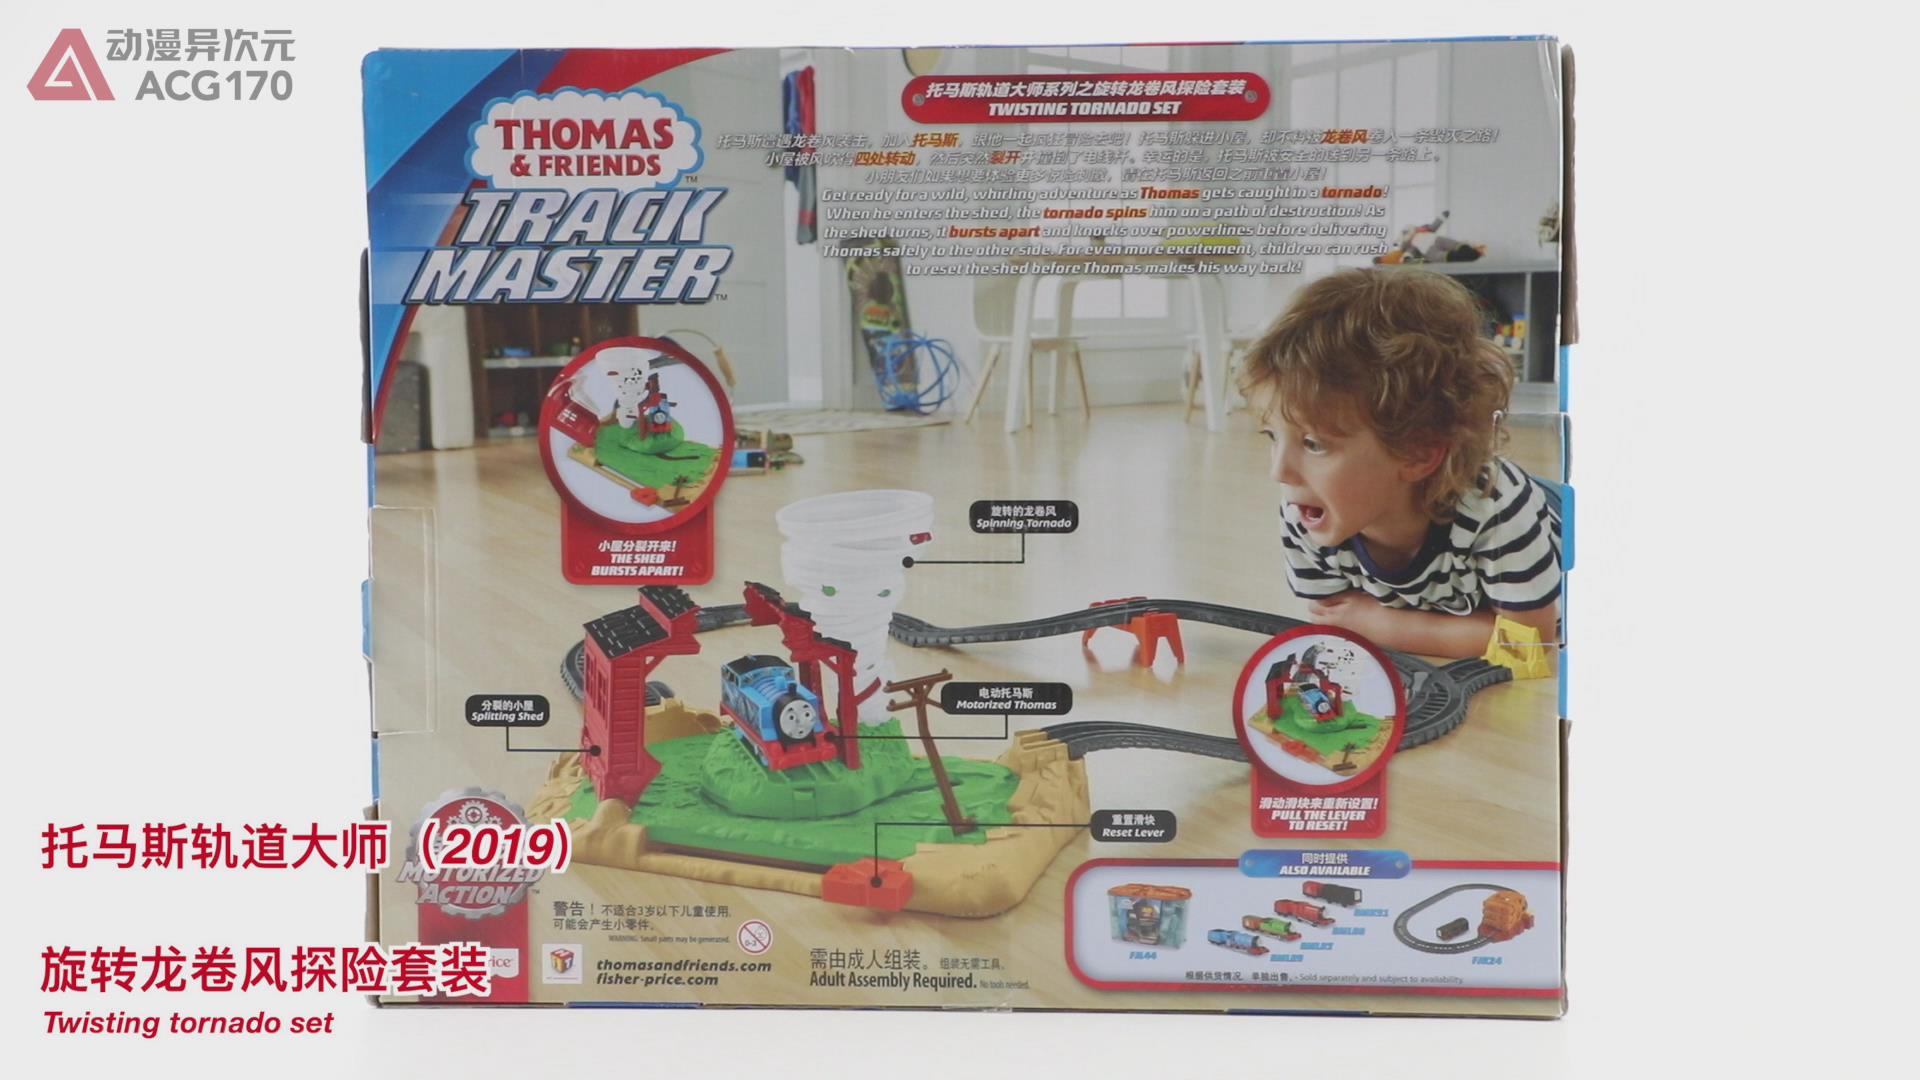 托马斯玩具套装(托马斯和他的朋友们 轨道大师系列之旋转龙卷风探险套装 图文评测)